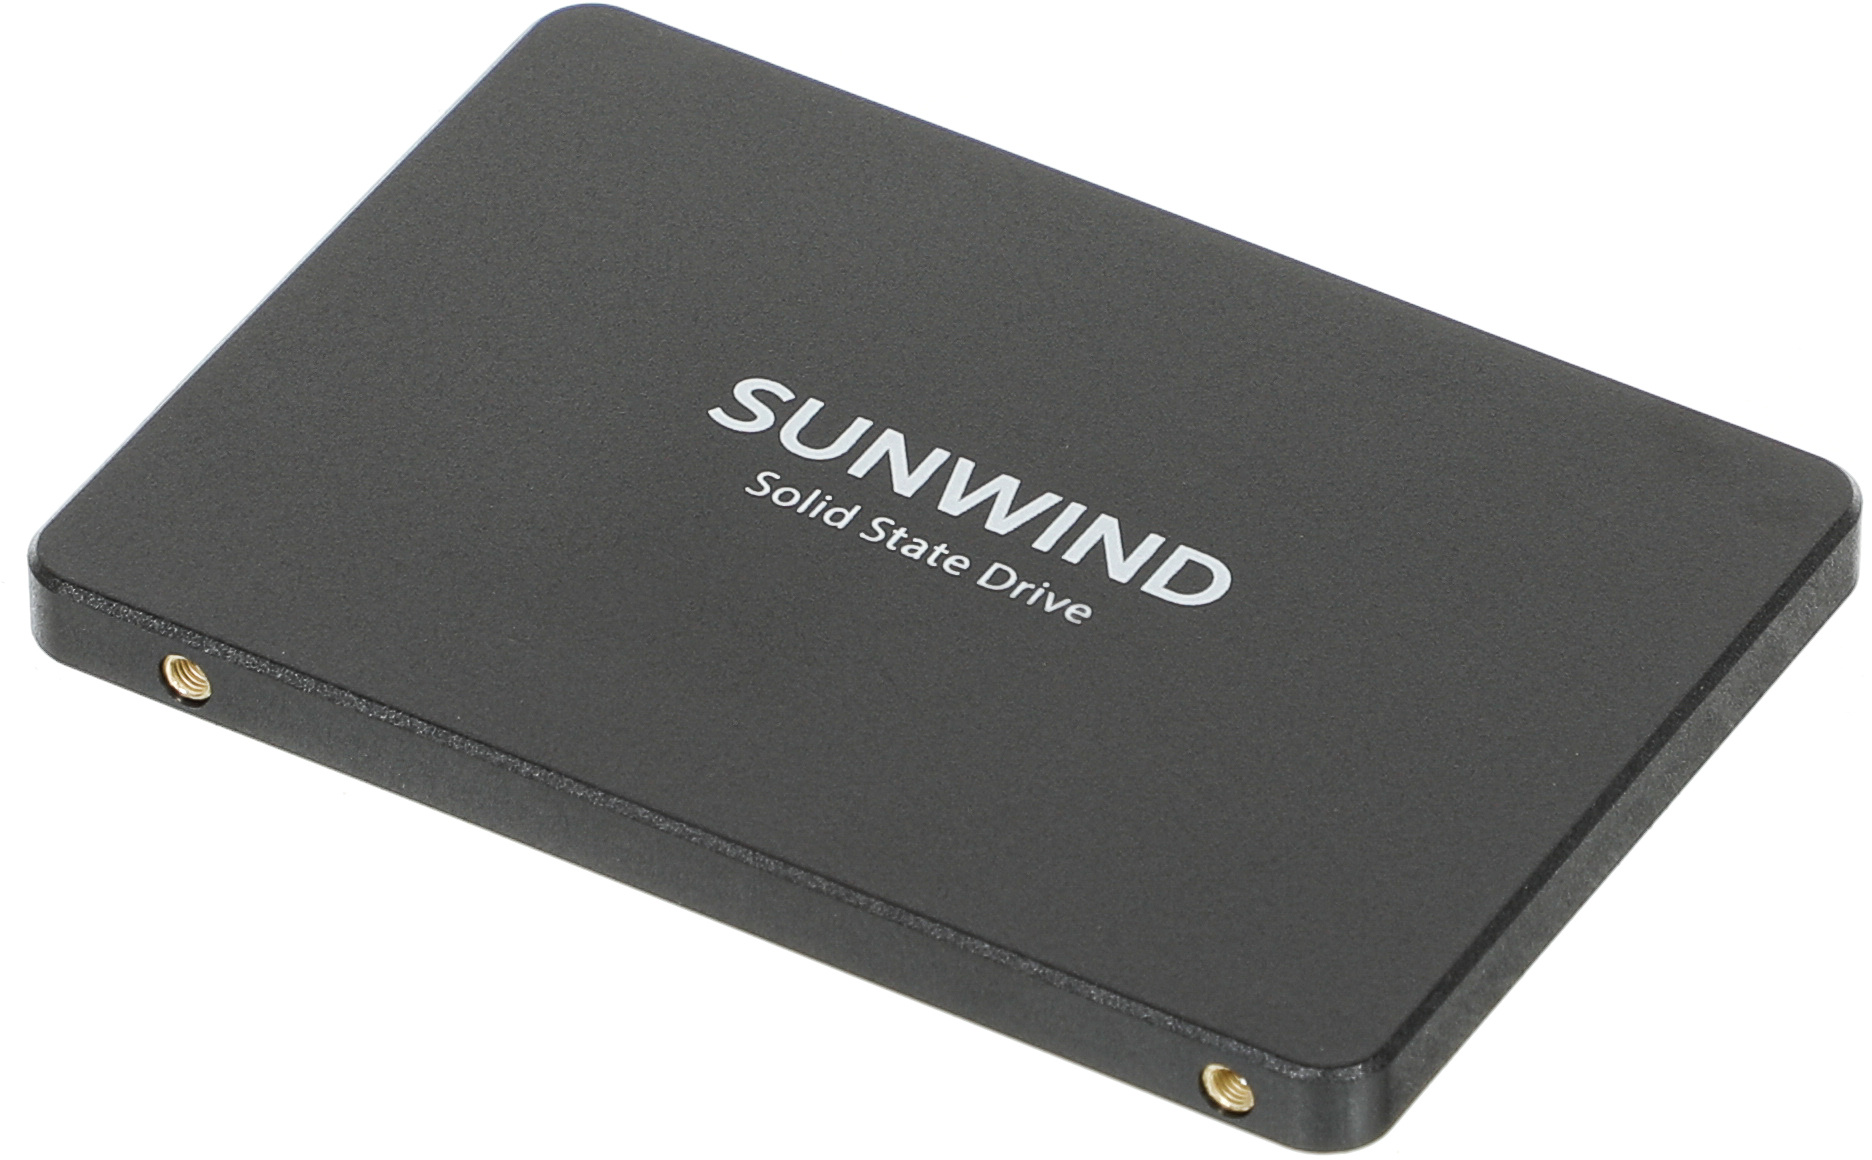 SSD  SunWind ST3 SWSSD256GS2T 256, 2.5, SATA III,  SATA,  rtl